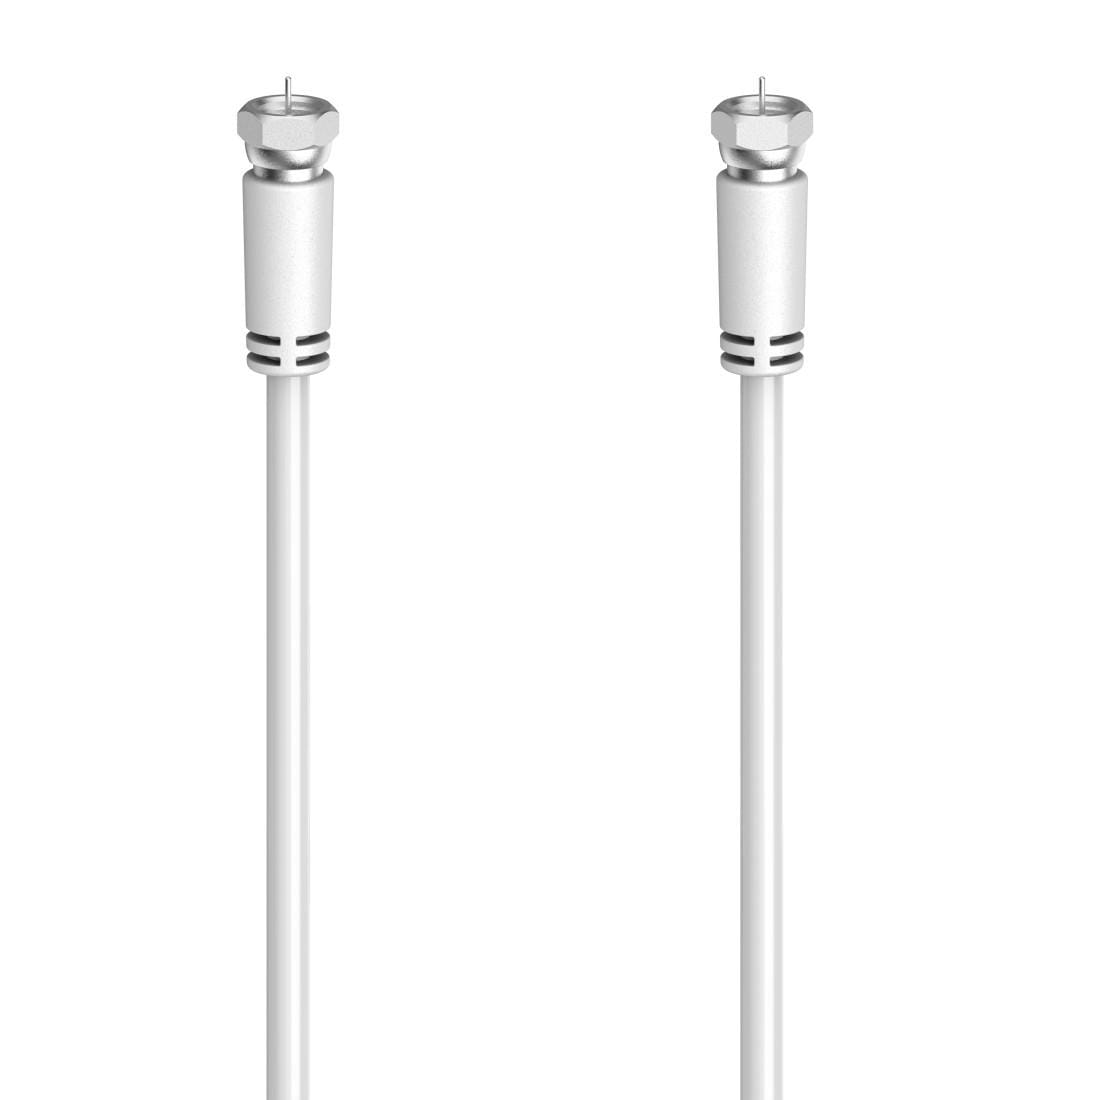 Hama SAT-Kabel »SAT-Anschlusskabel, F-Stecker - F-Stecker, 1,5 - 10 m, 90 dB«, F-Stecker, 150 cm